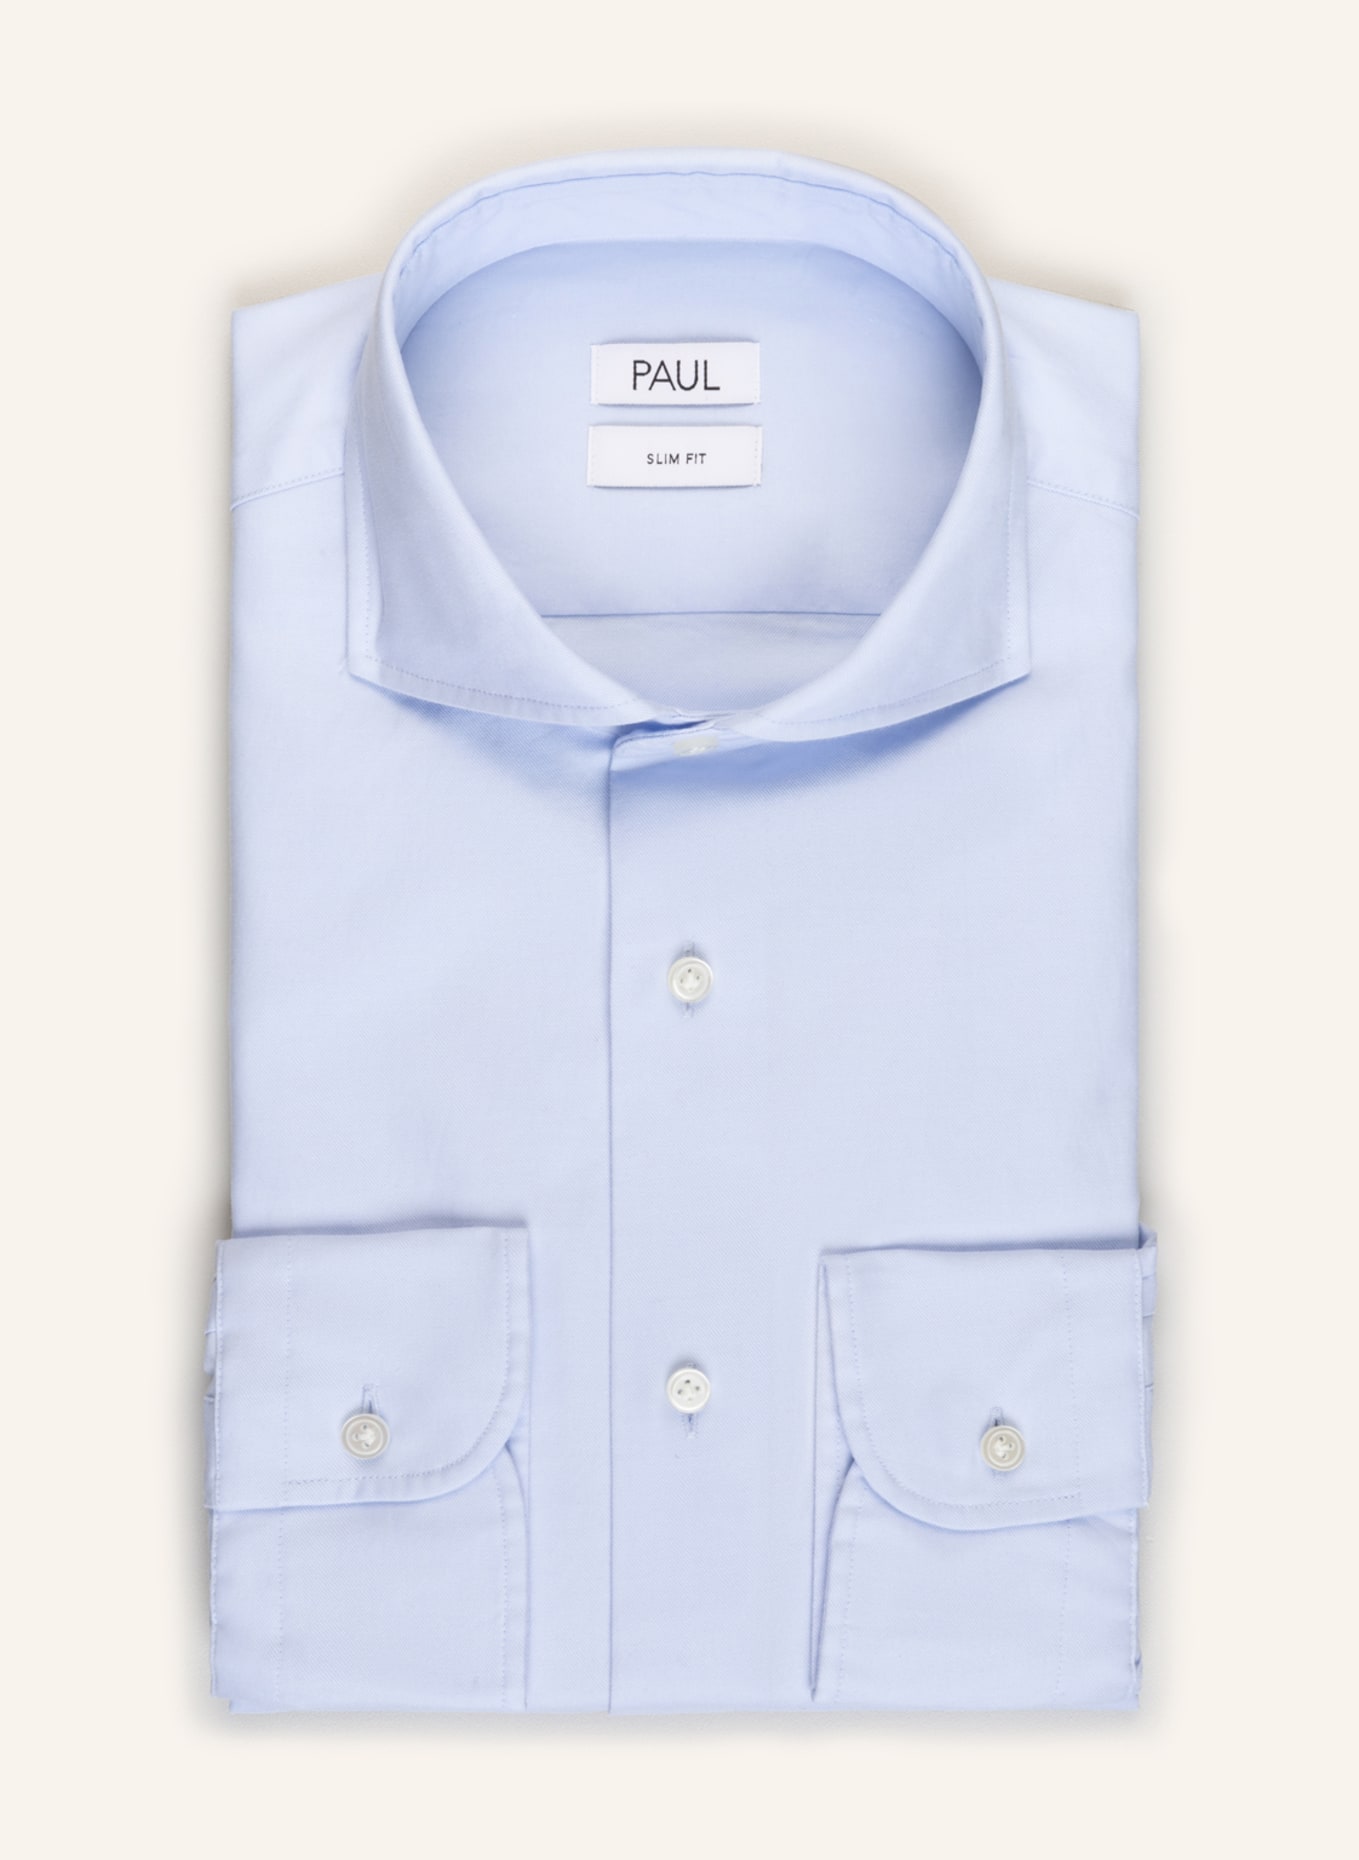 PAUL Shirt Slim Fit , Color: LIGHT BLUE (Image 1)